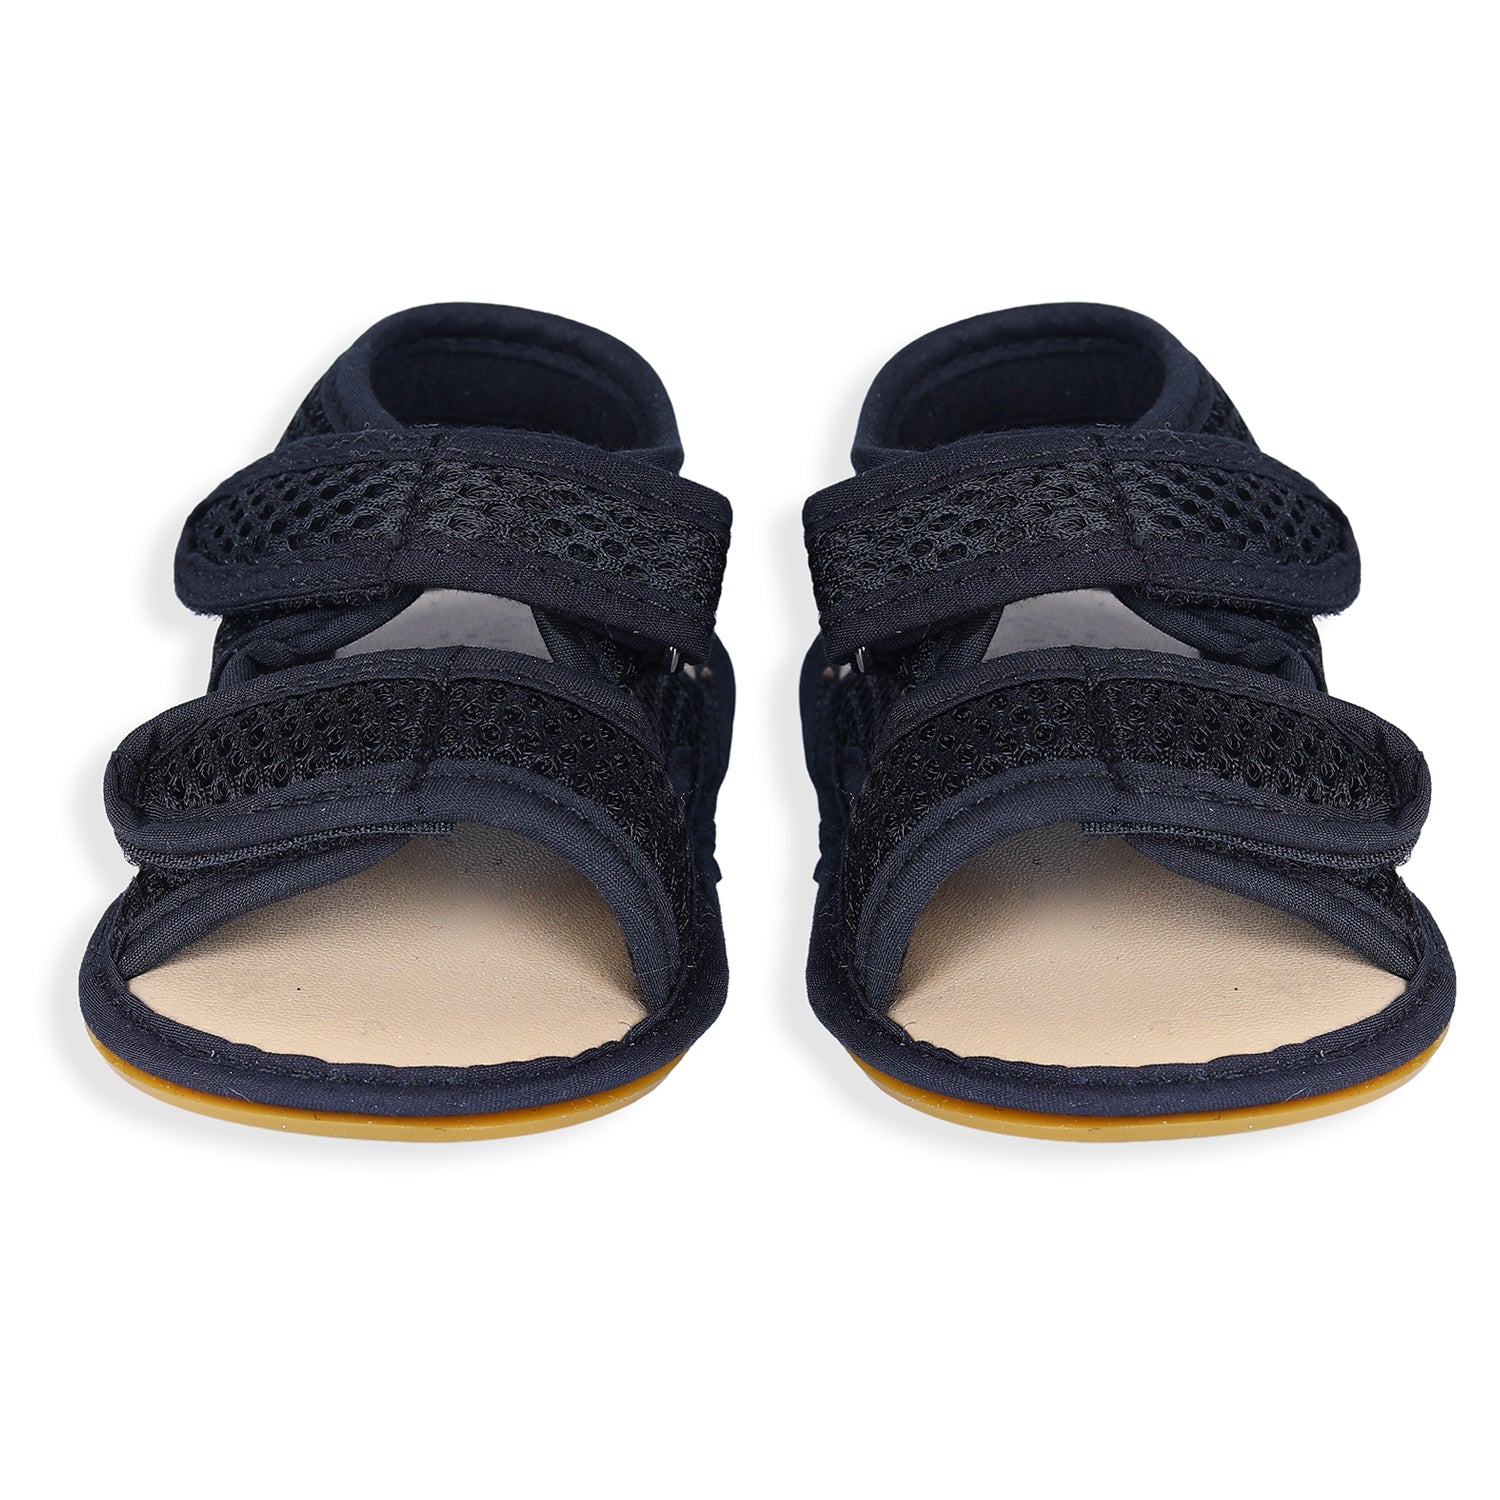 Solid Hookloop Comfortable Anti-skid Floater Sandals - Black - Baby Moo